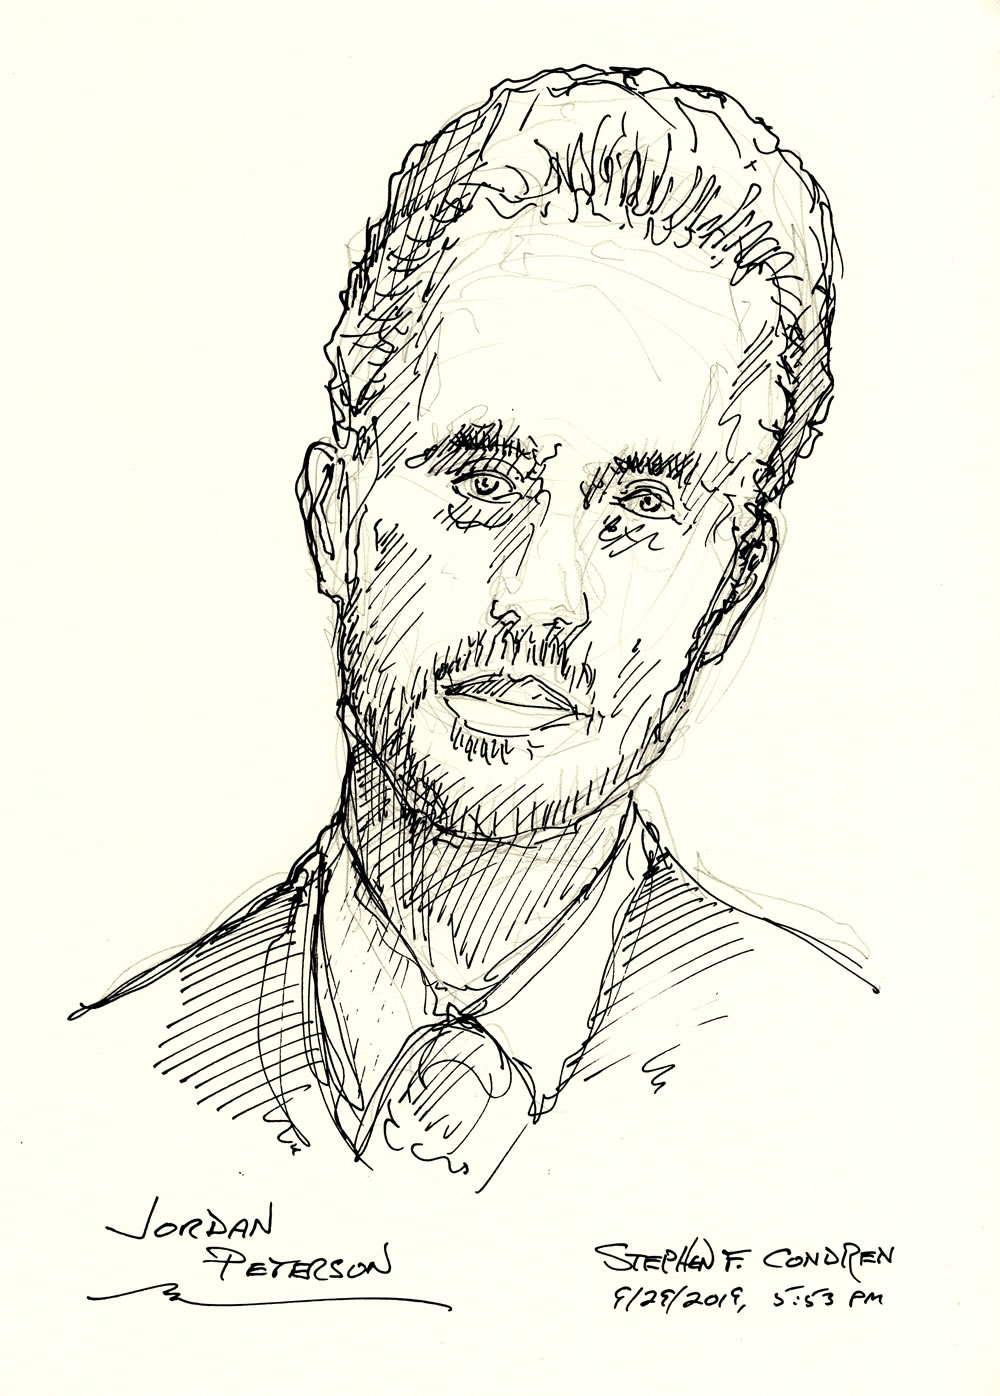 Jordan Peterson #410Z pen & ink drawing by artist Stephen F. Condren.